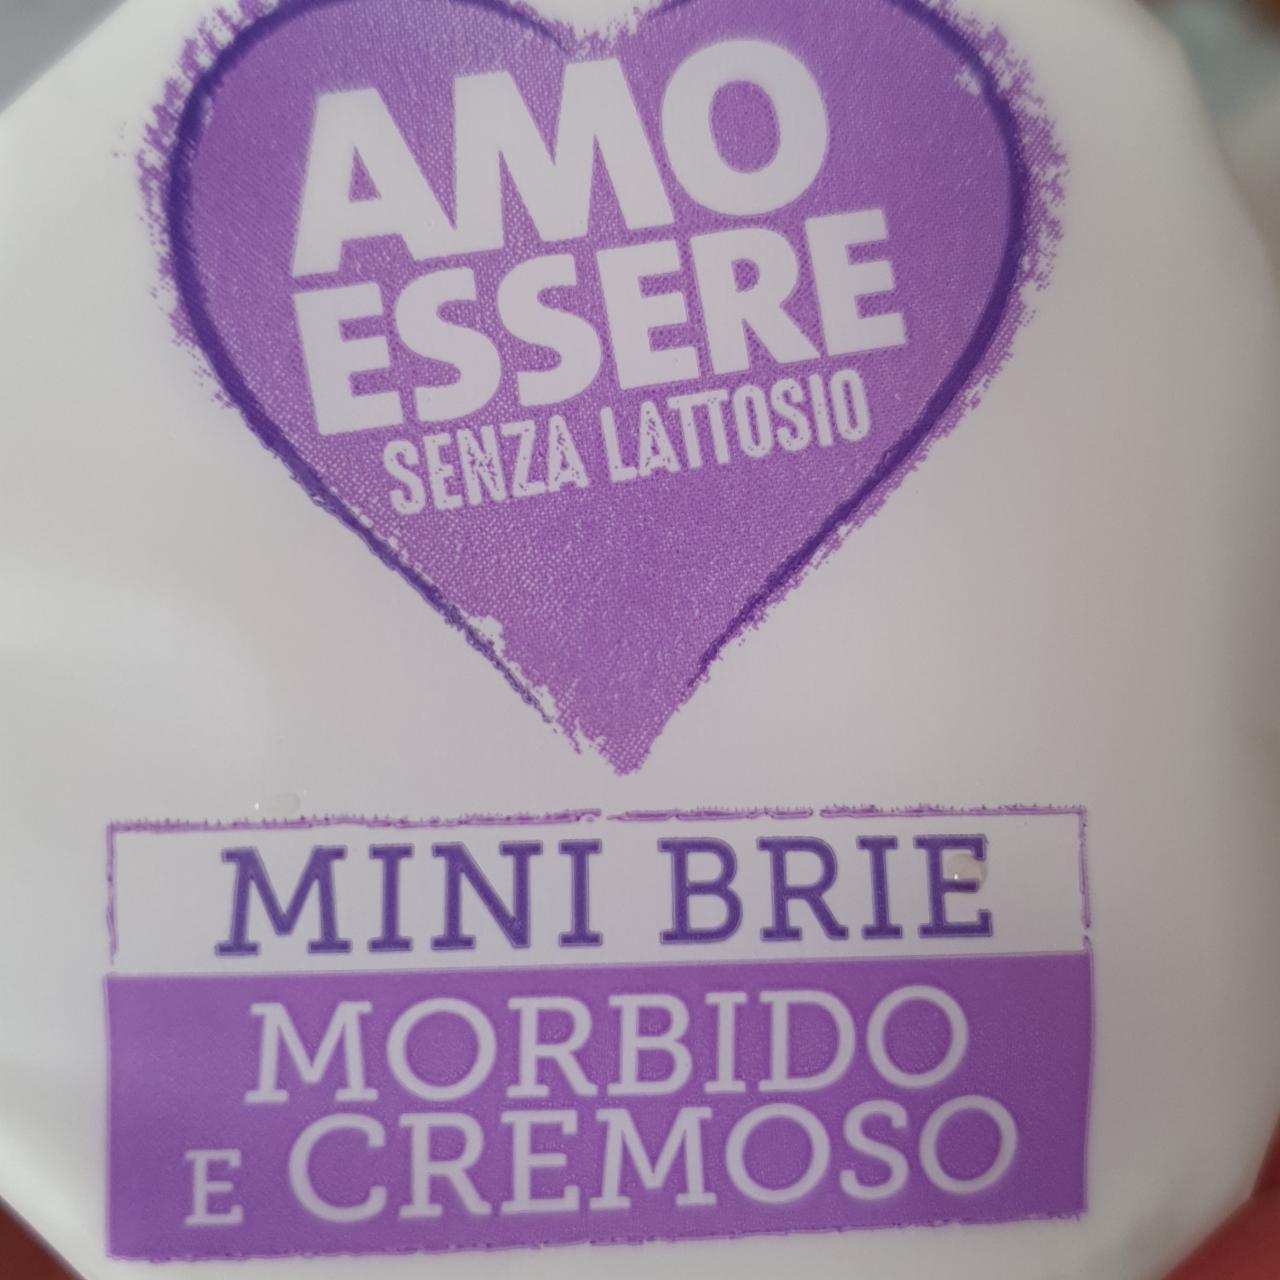 Фото - Mini Brie Formaggio morbido e cremoso Amo Essere senza lattosio Land